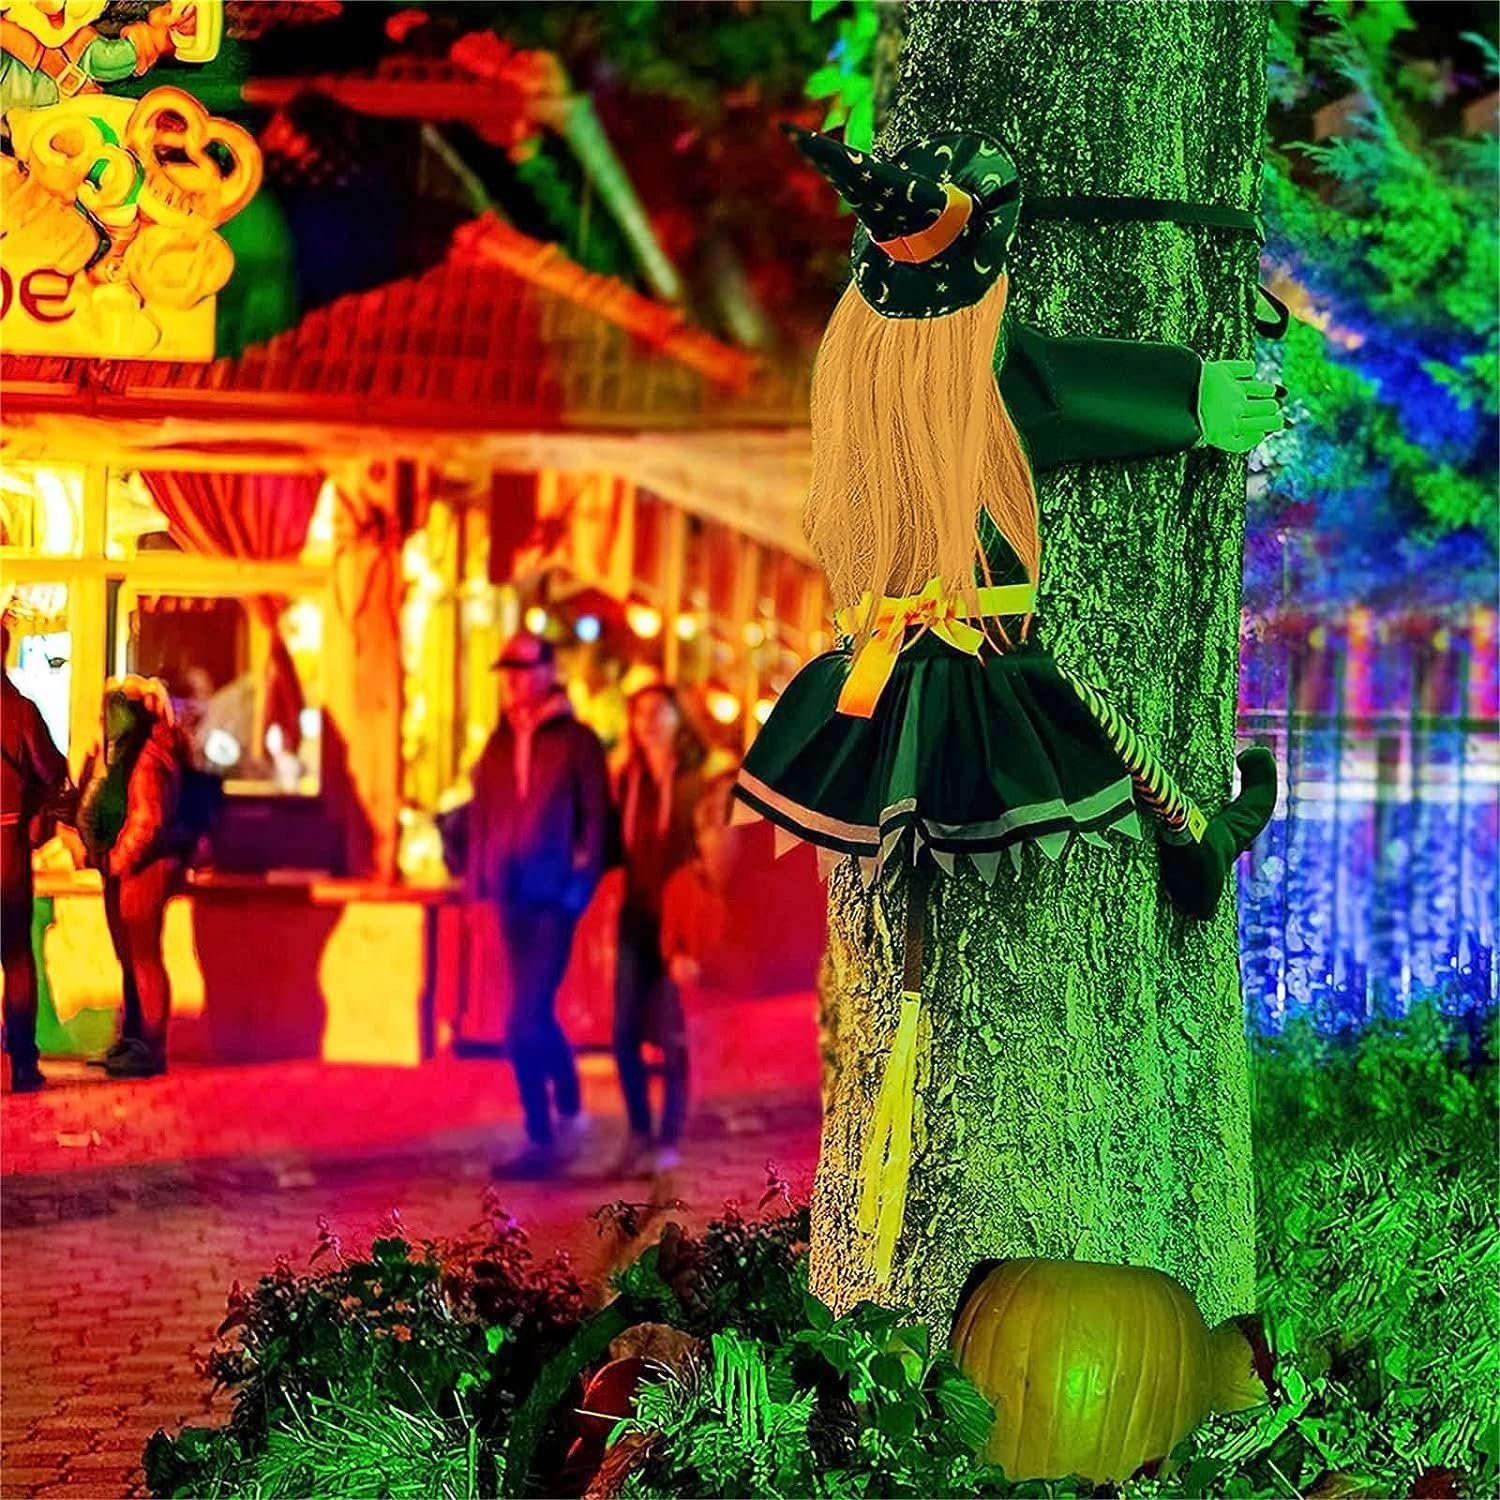 Baum, in Halloween Deko Hexe Abstürzende Halloween Dekoration autolock Dekobaum